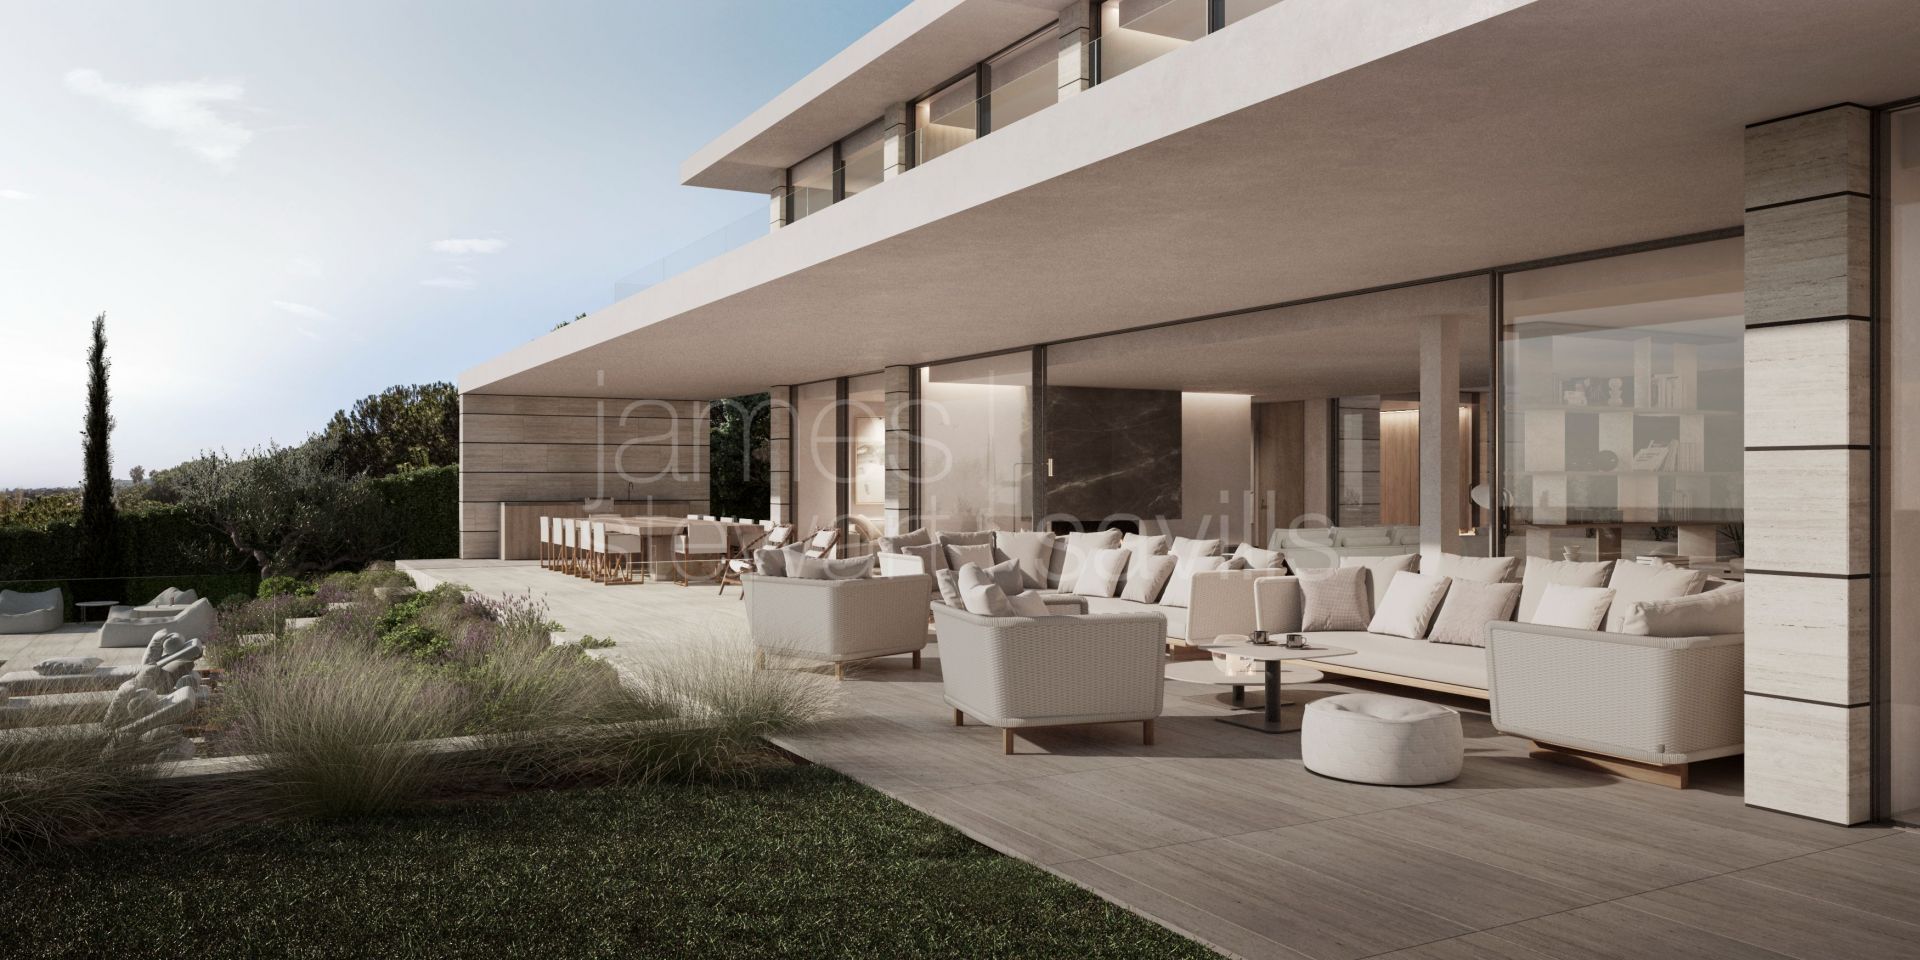 Villa en construcción casi terminada en zona de Almenara, Sotogrande Alto, con fabulosas vistas al golf y al mar